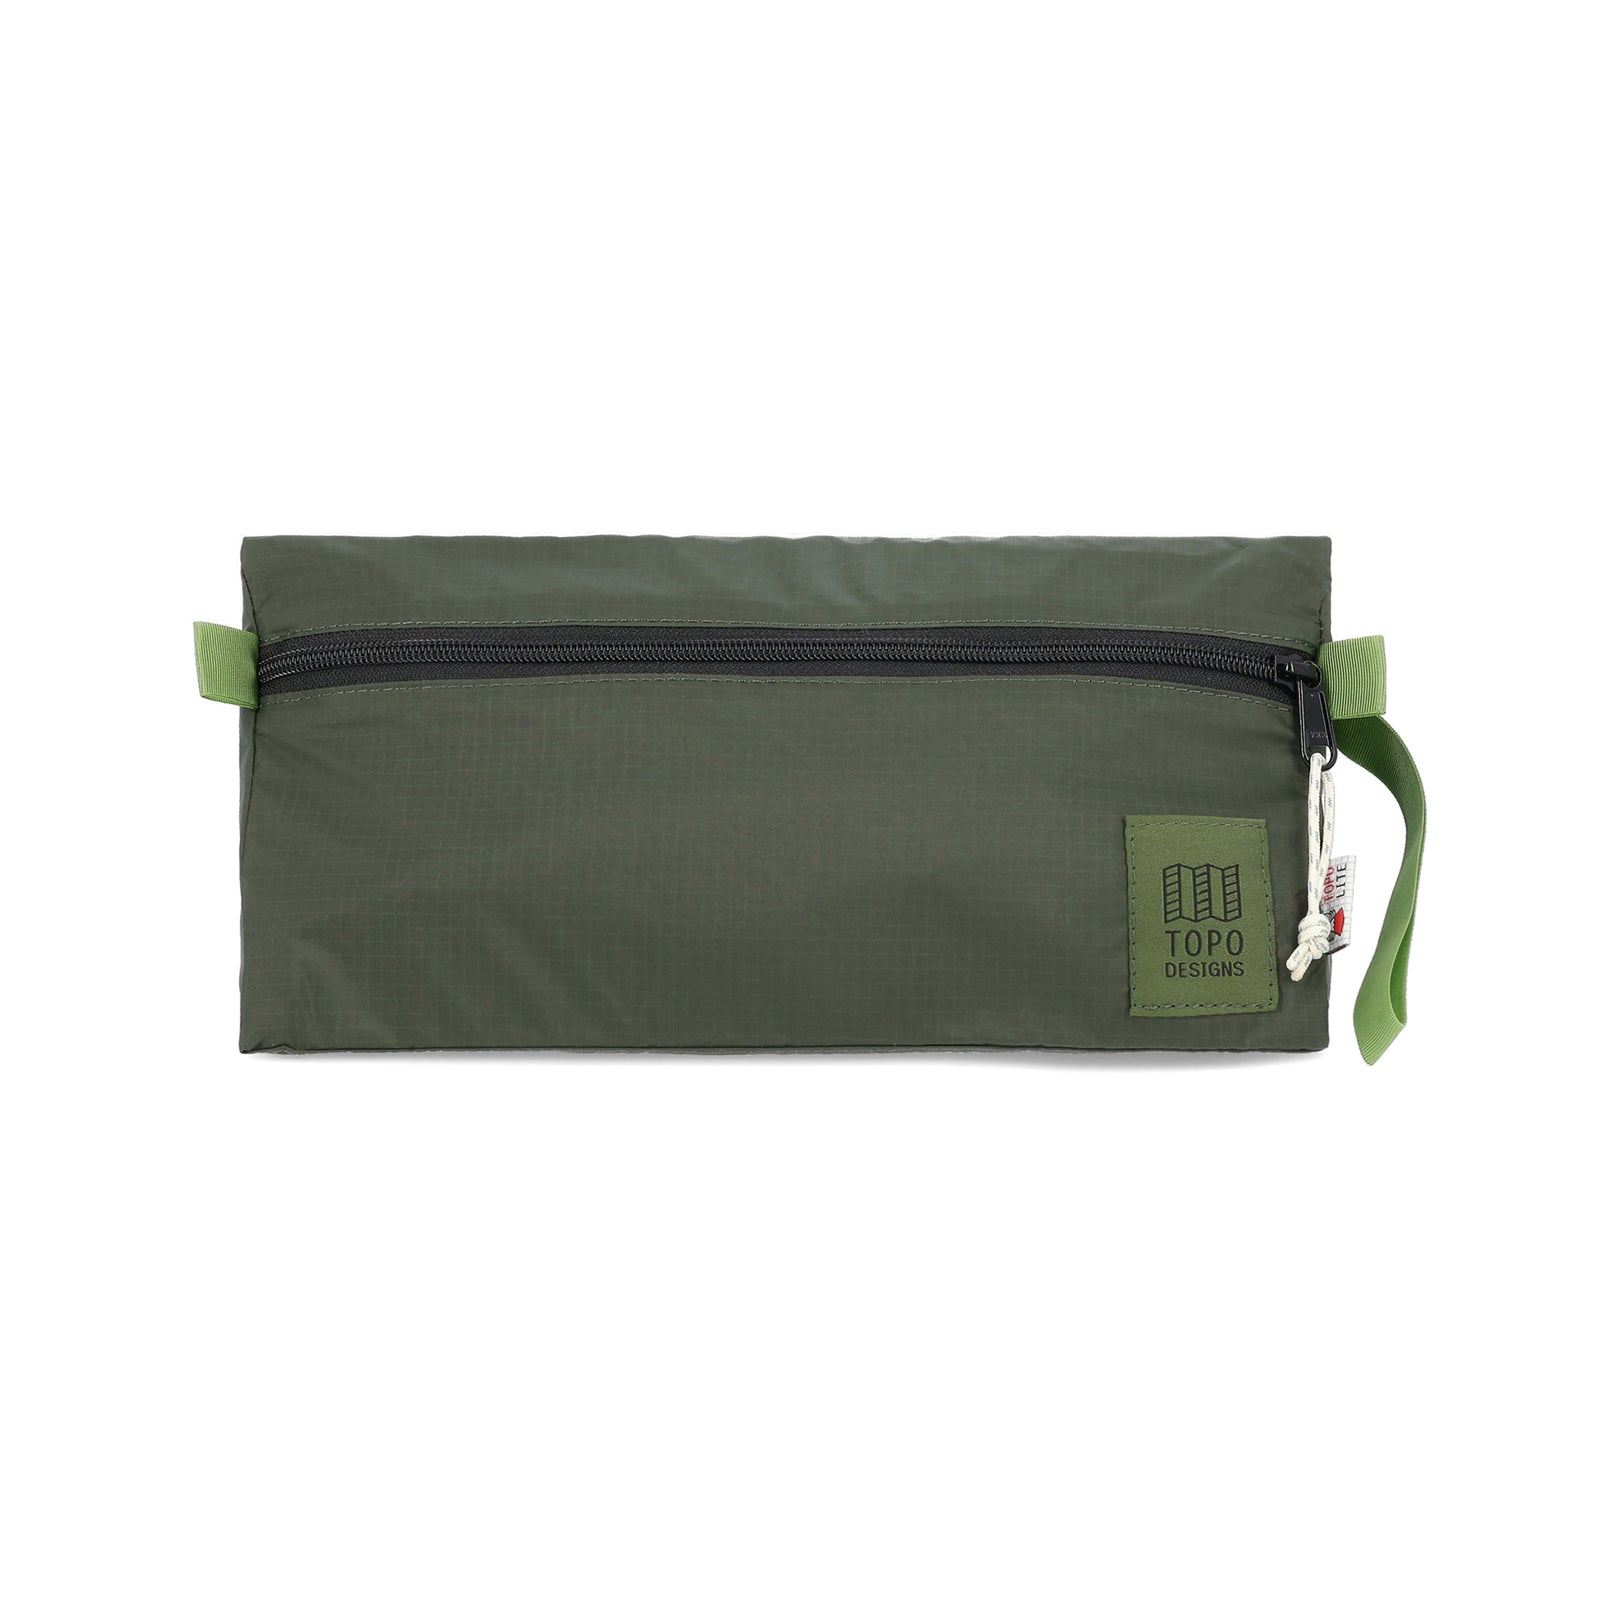 Topo Designs TopoLite Dopp Kit ultralight toiletry bag for travel in "olive" green